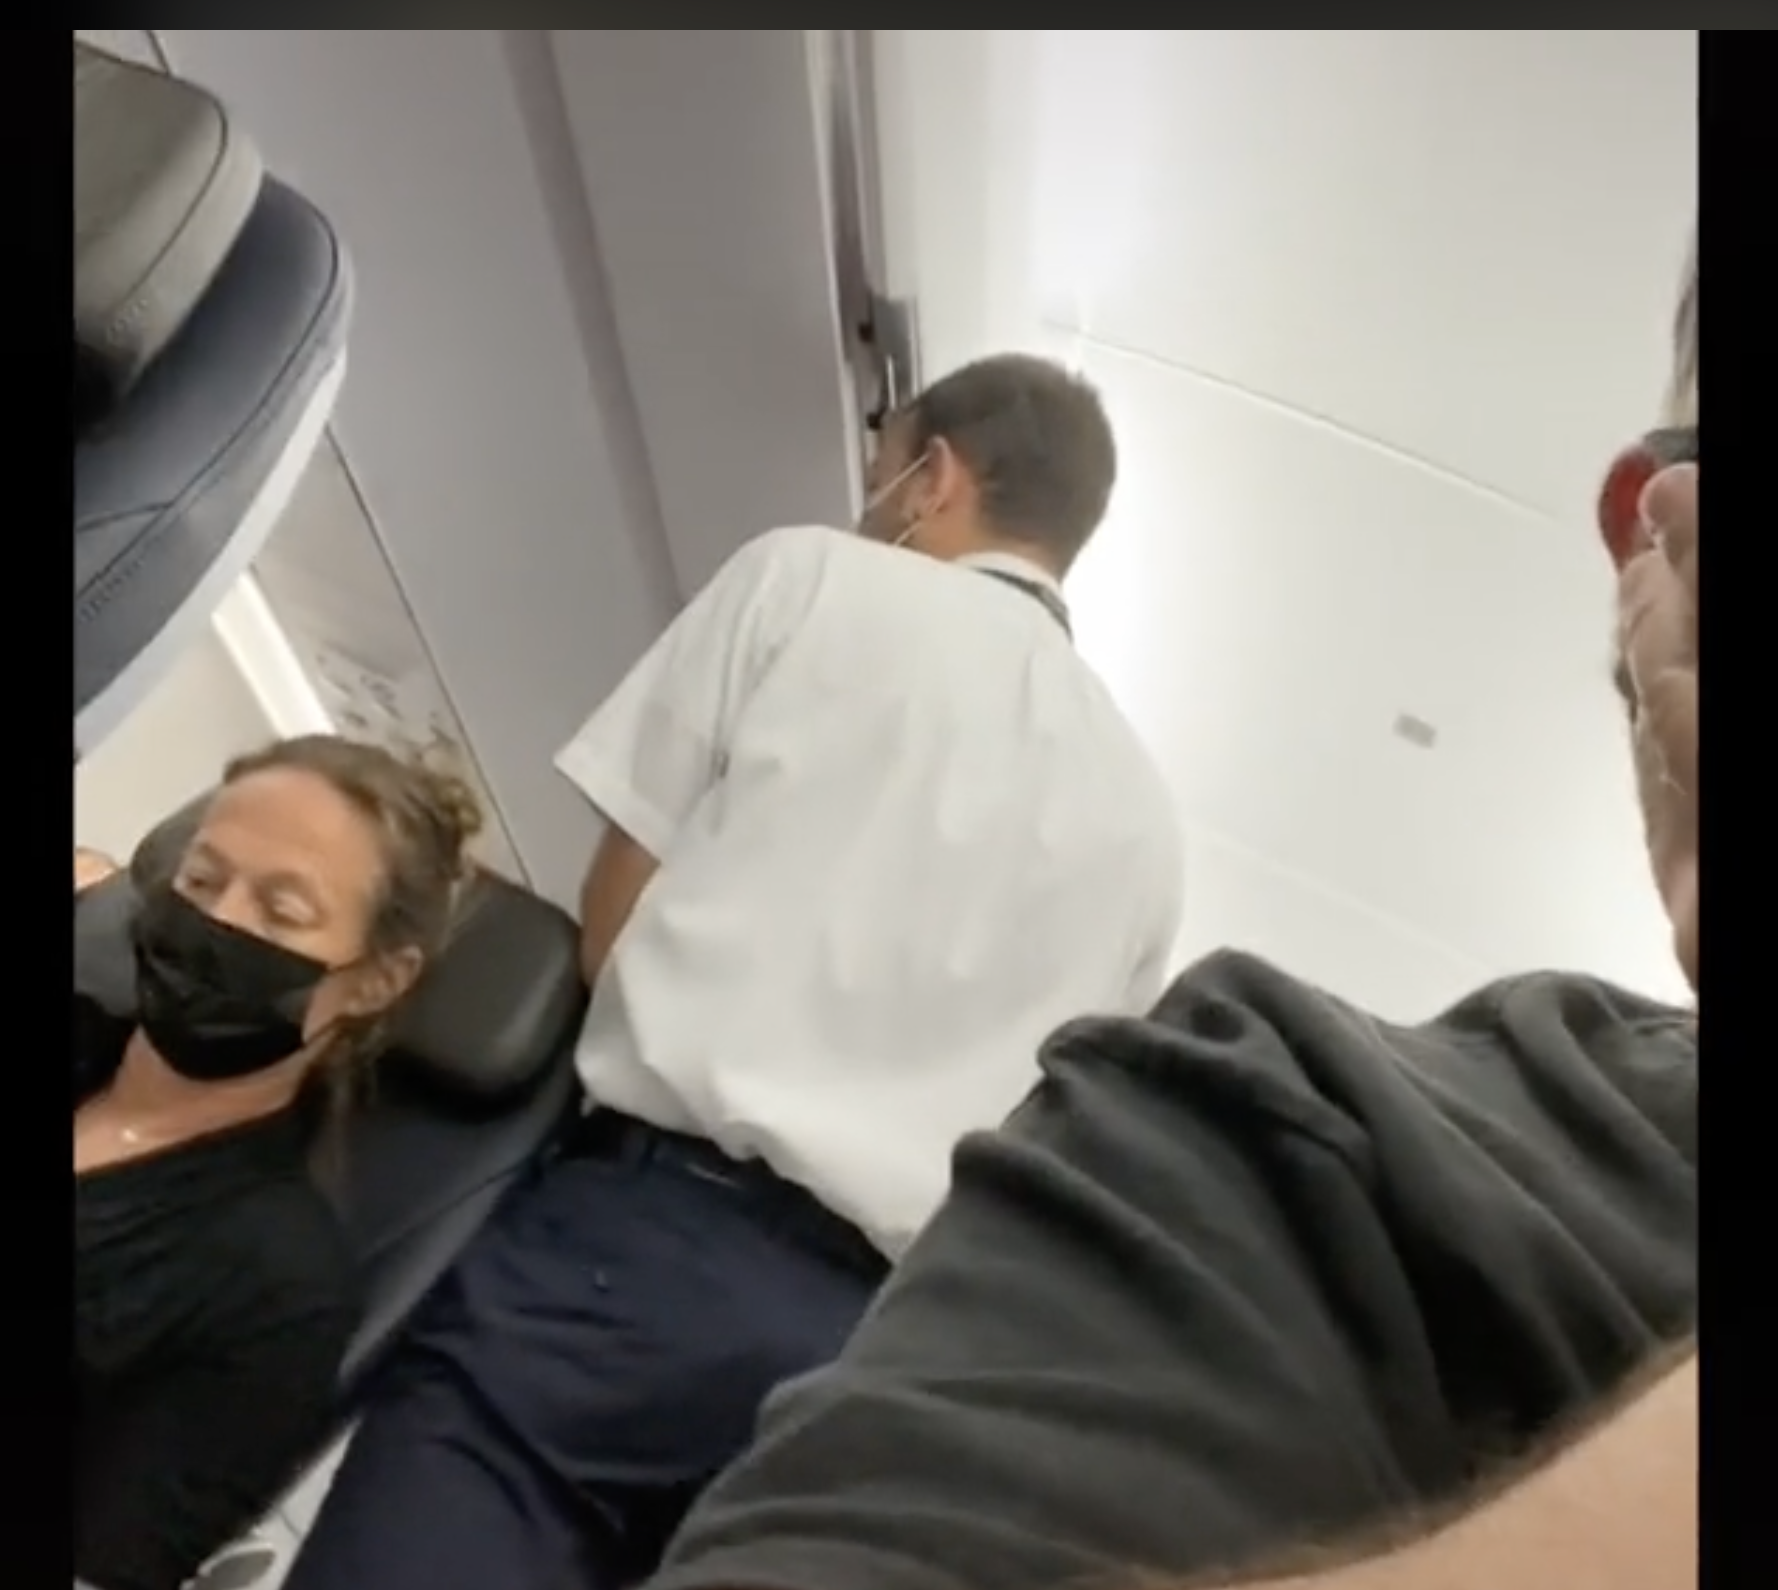 L'un des agents de bord est photographié en train de parler à un passager apparemment indiscipliné en plein vol. | Source : tiktok.com/@brentunderwood